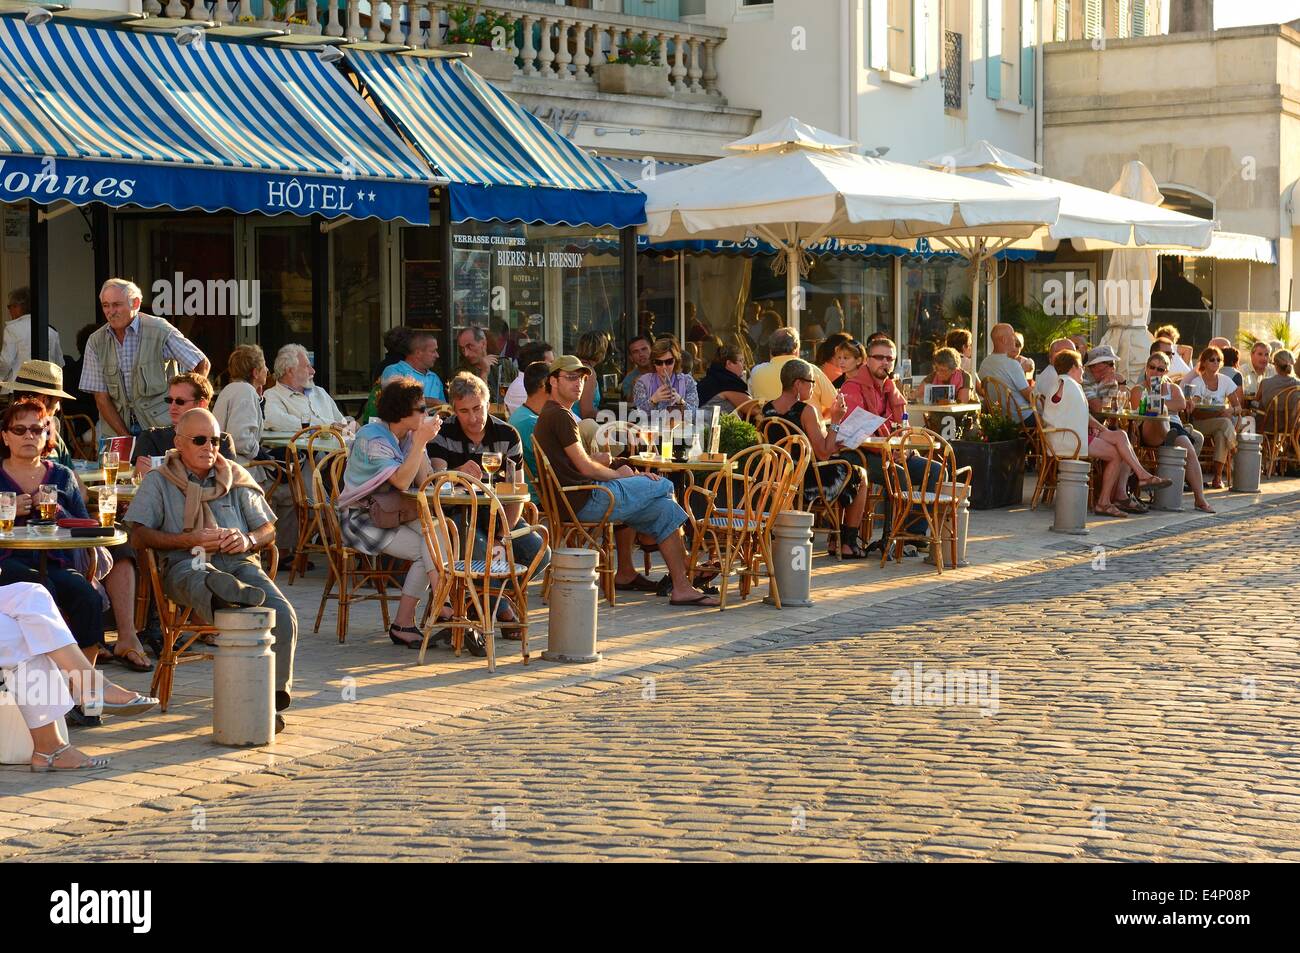 Pavement cafes / restaurants at Saint Martin de Re on Ile de Re. Poitou-Charentes region of France. Stock Photo